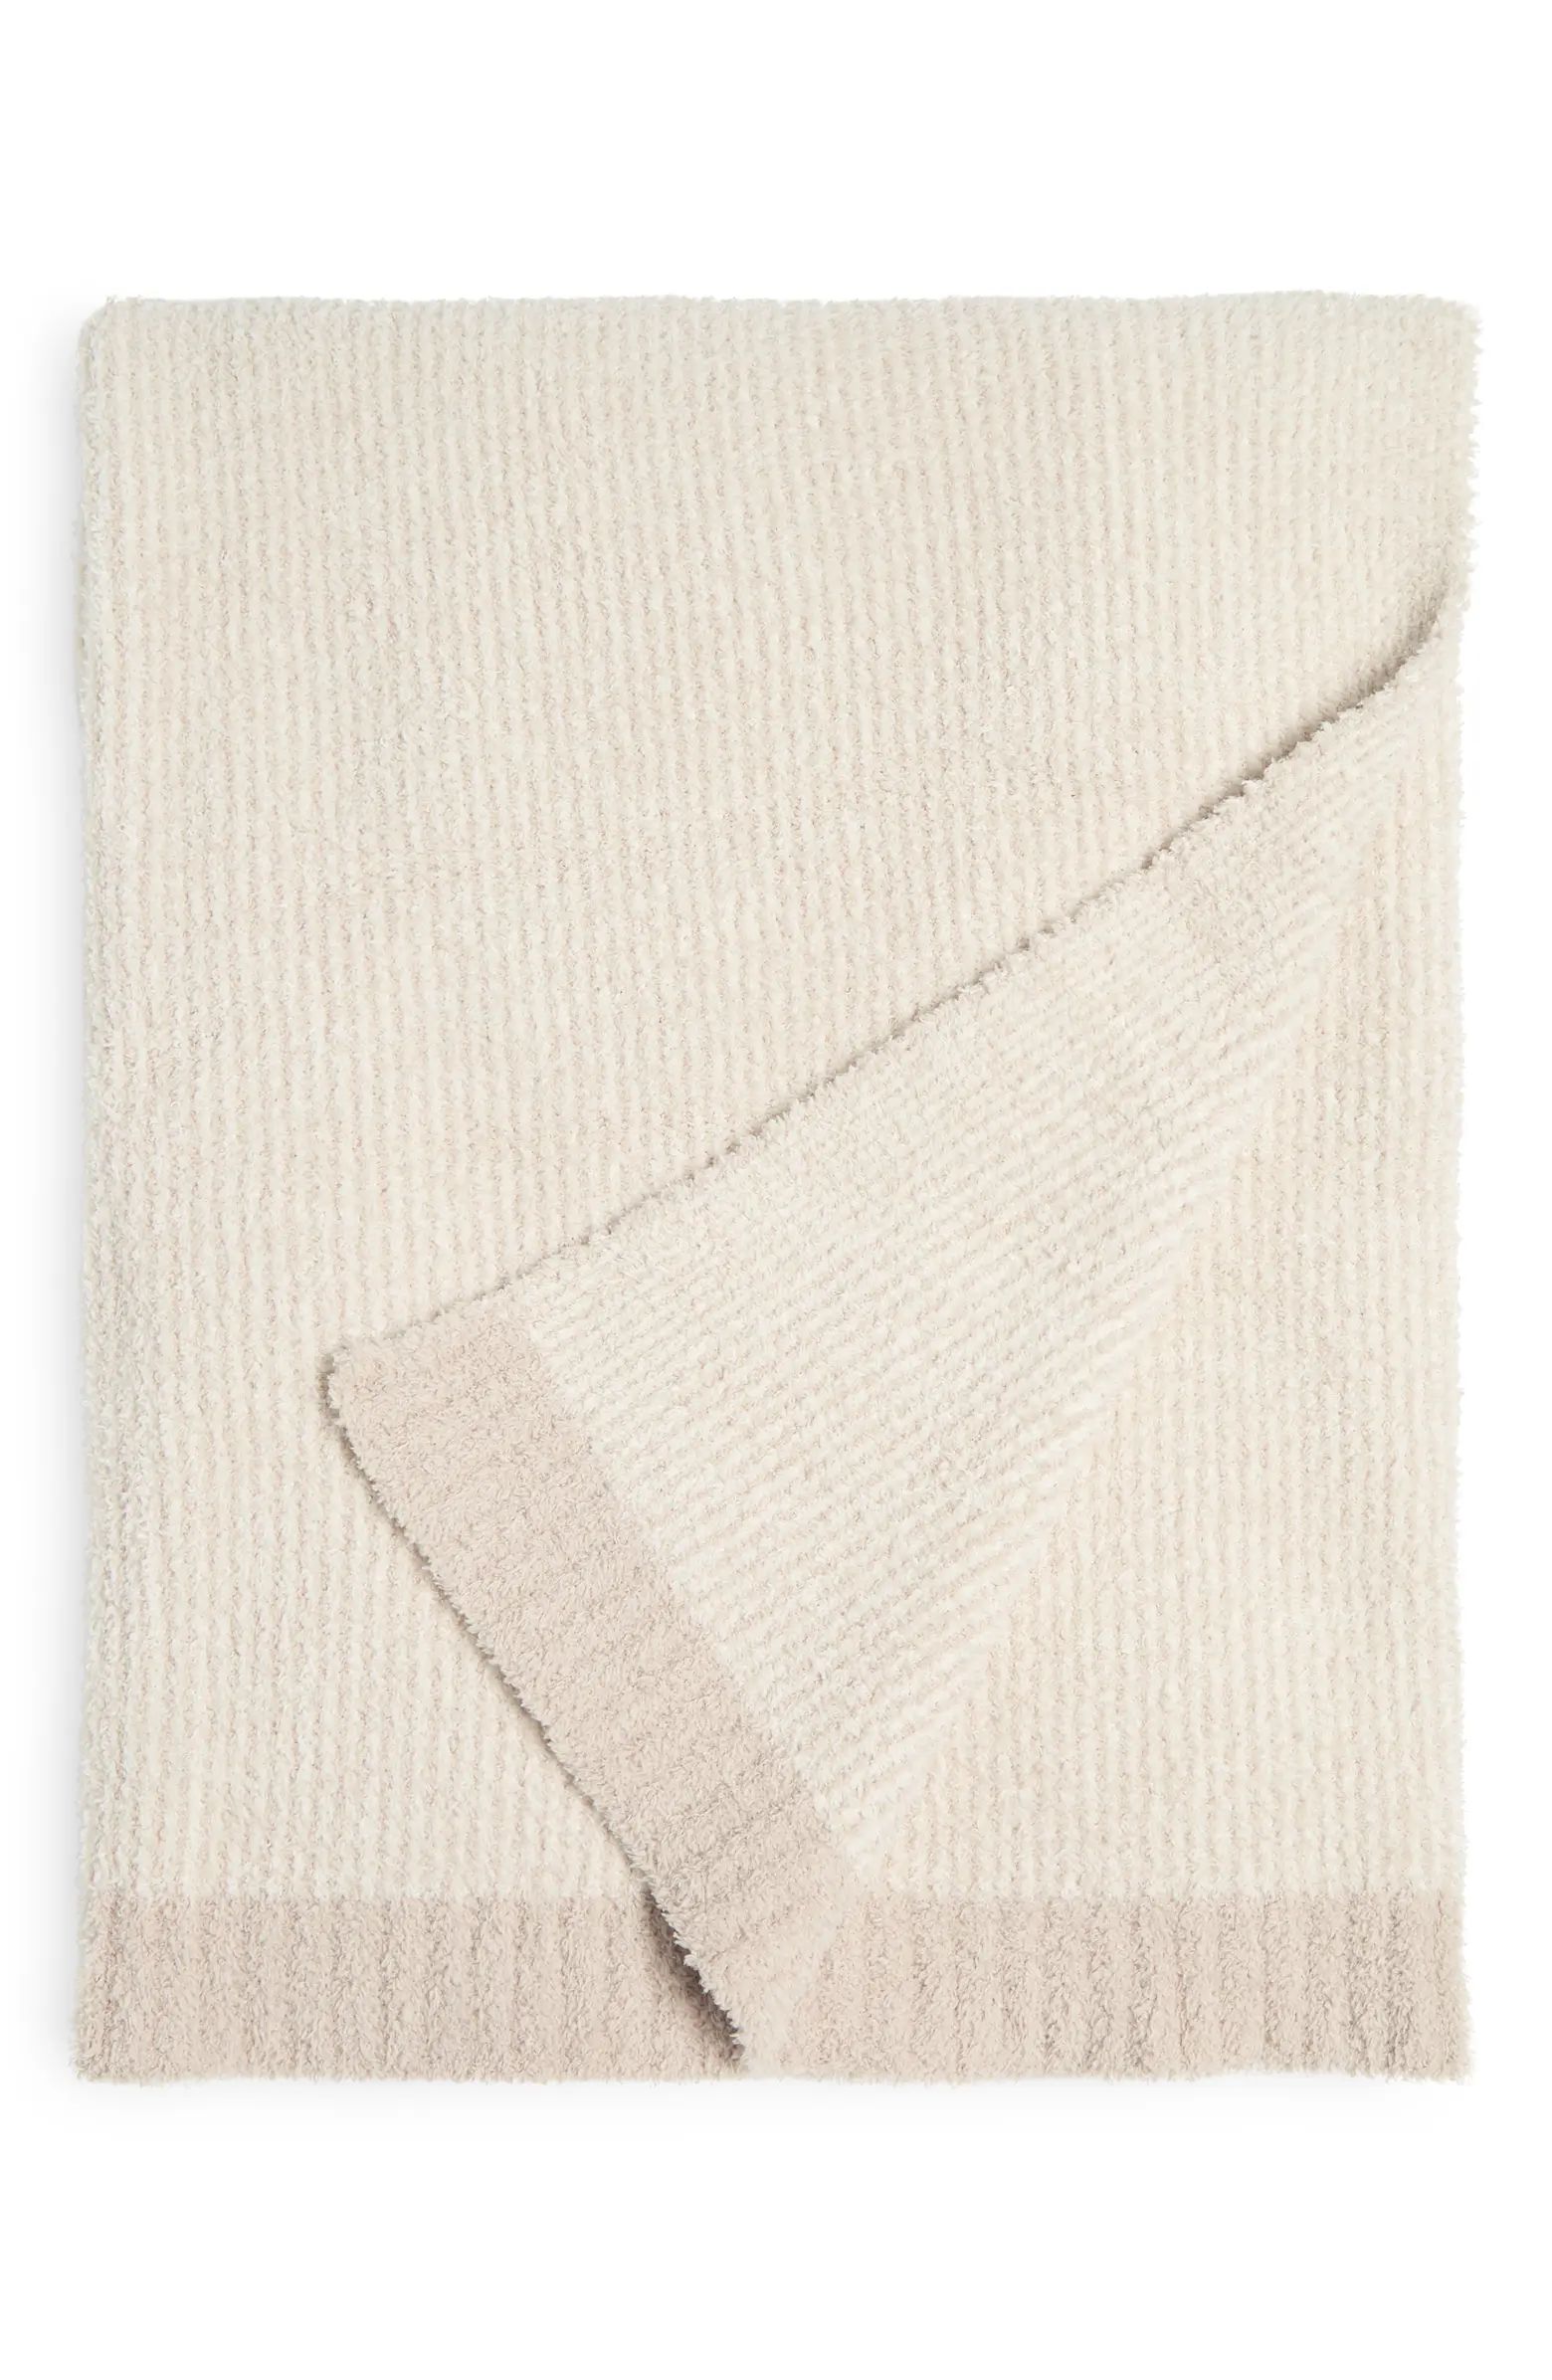 CozyChic Microstripe Blanket | Nordstrom Rack